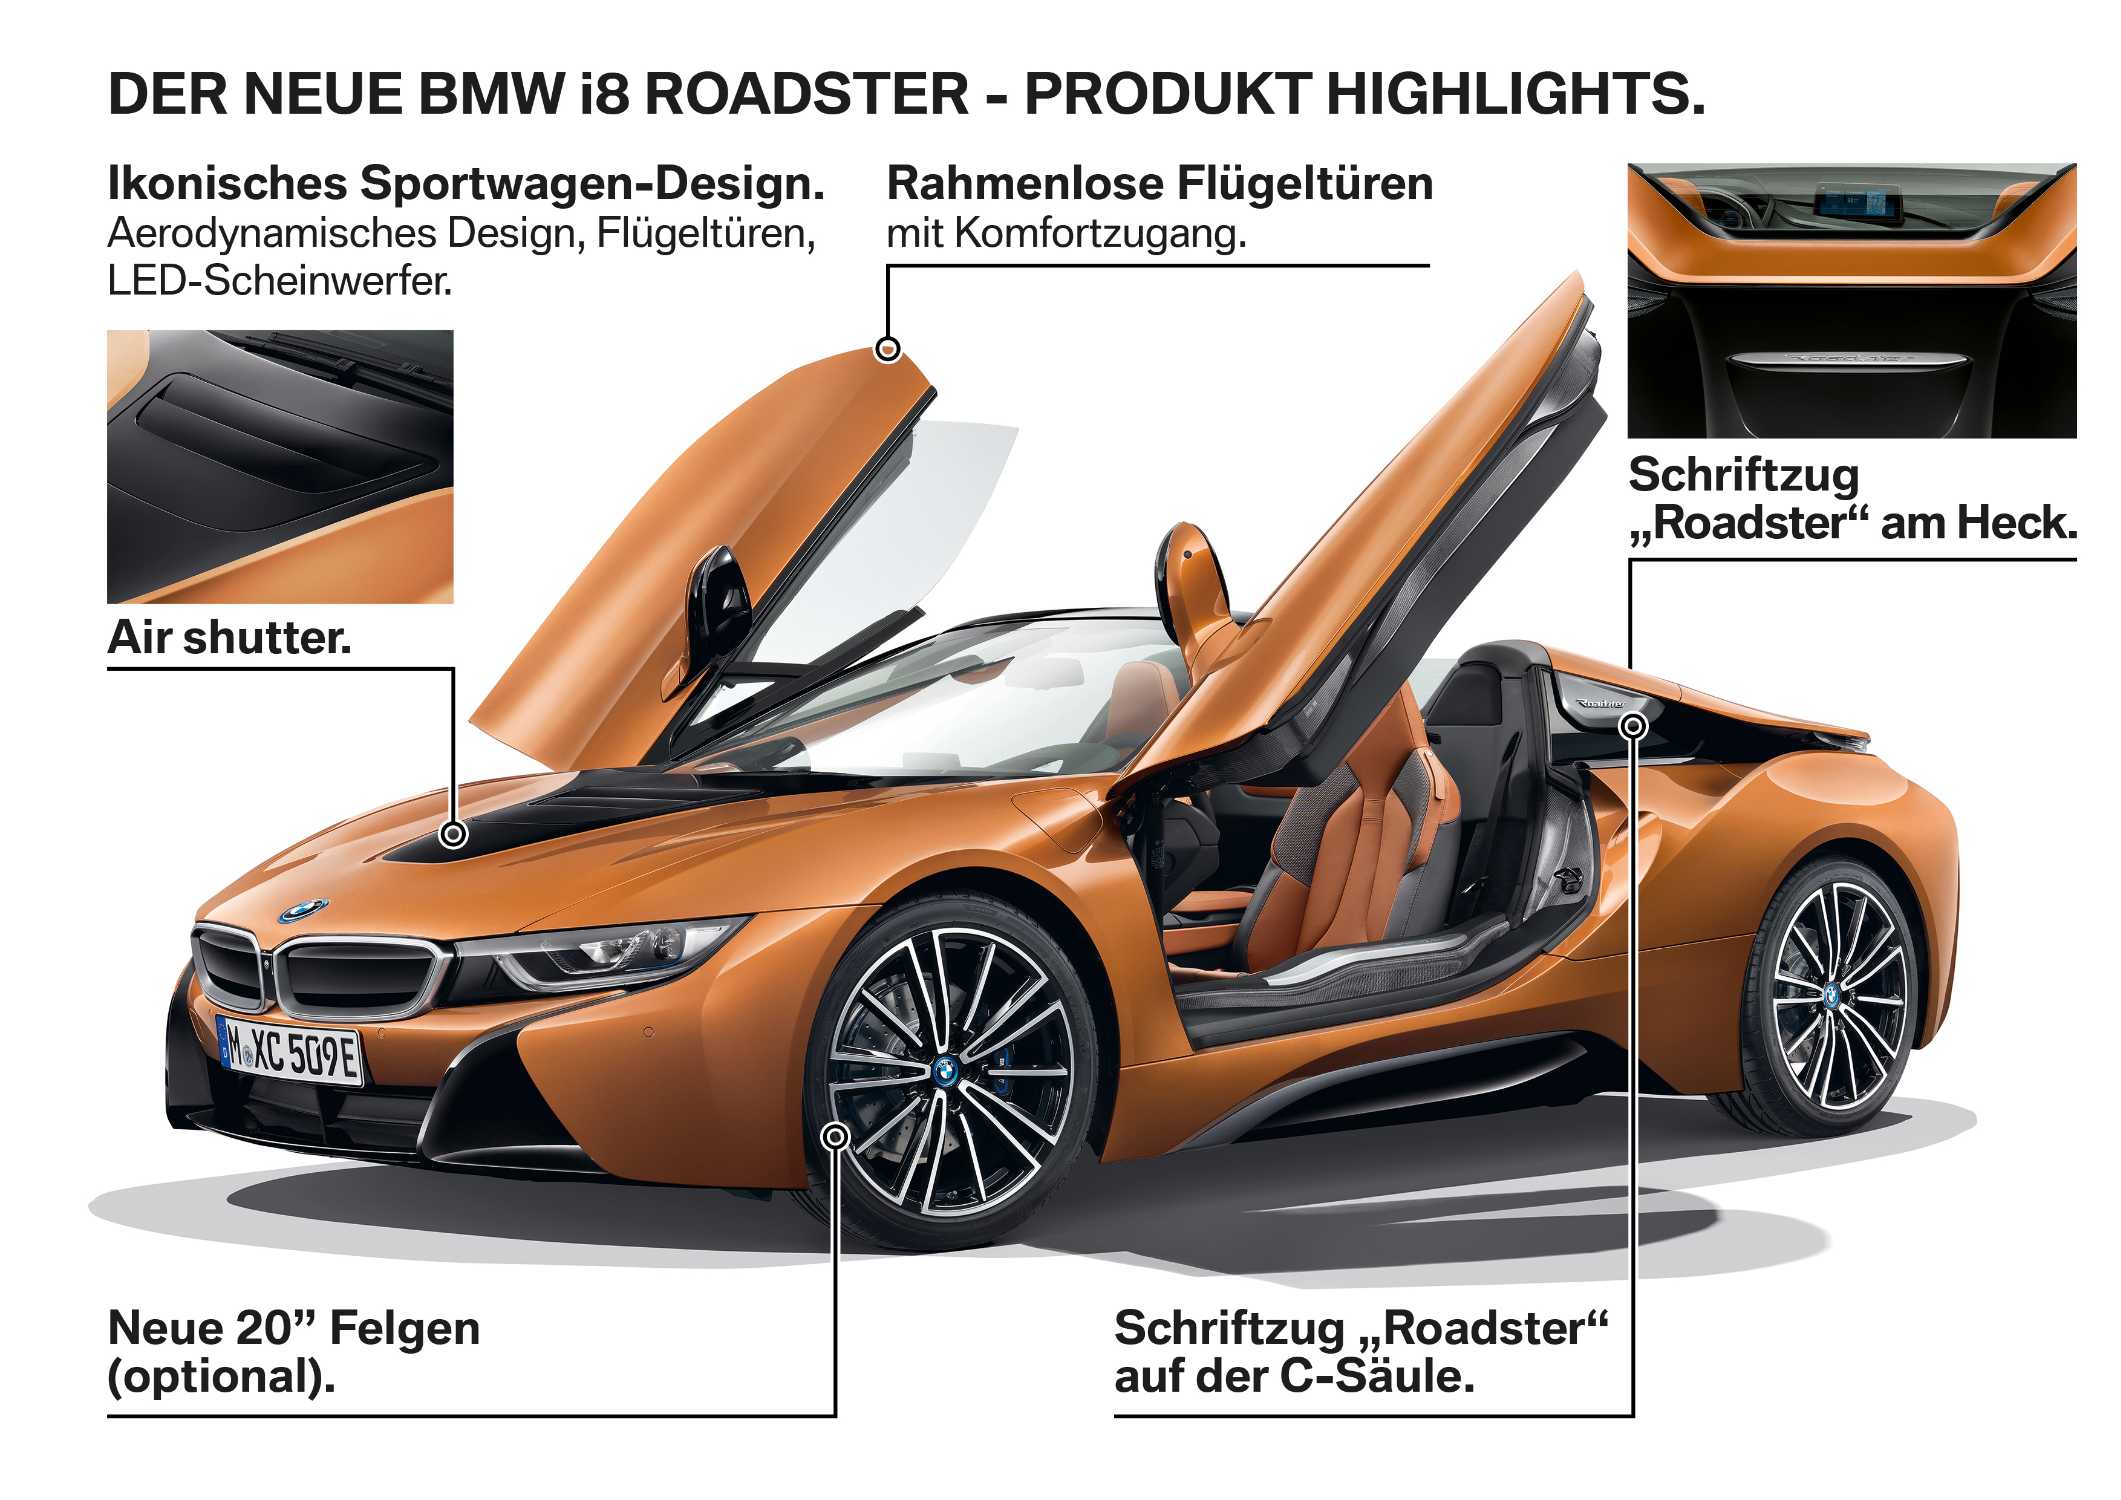 Der neue BMW i8 Roadster - Produkt Highlights. (11/2017)